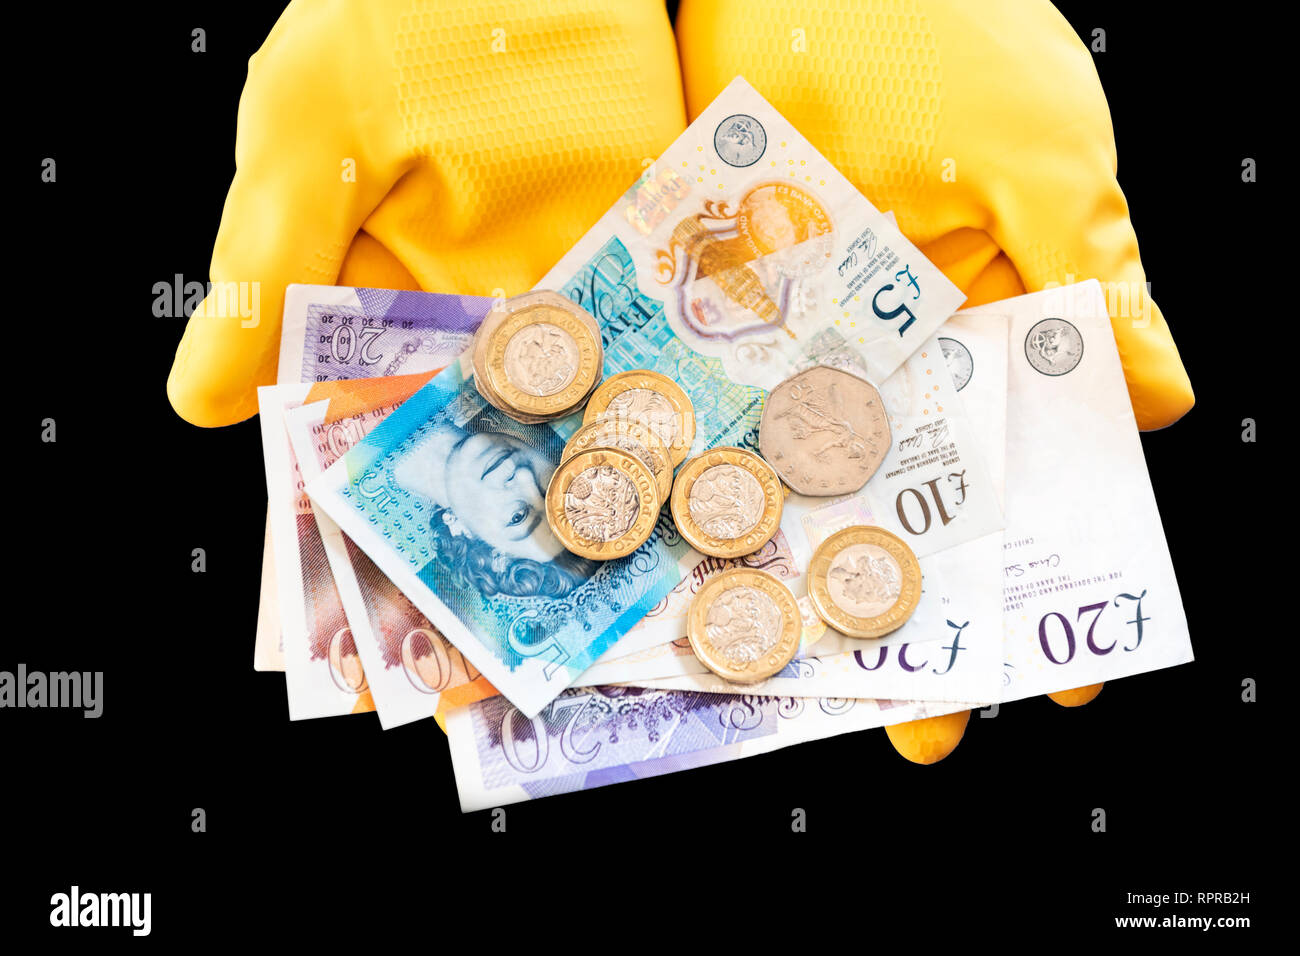 Un par de manos usando guantes de goma amarilla celebración pound notas y monedas. Concepto de dinero en efectivo, la economía sumergida o de baja remuneración. Foto de stock